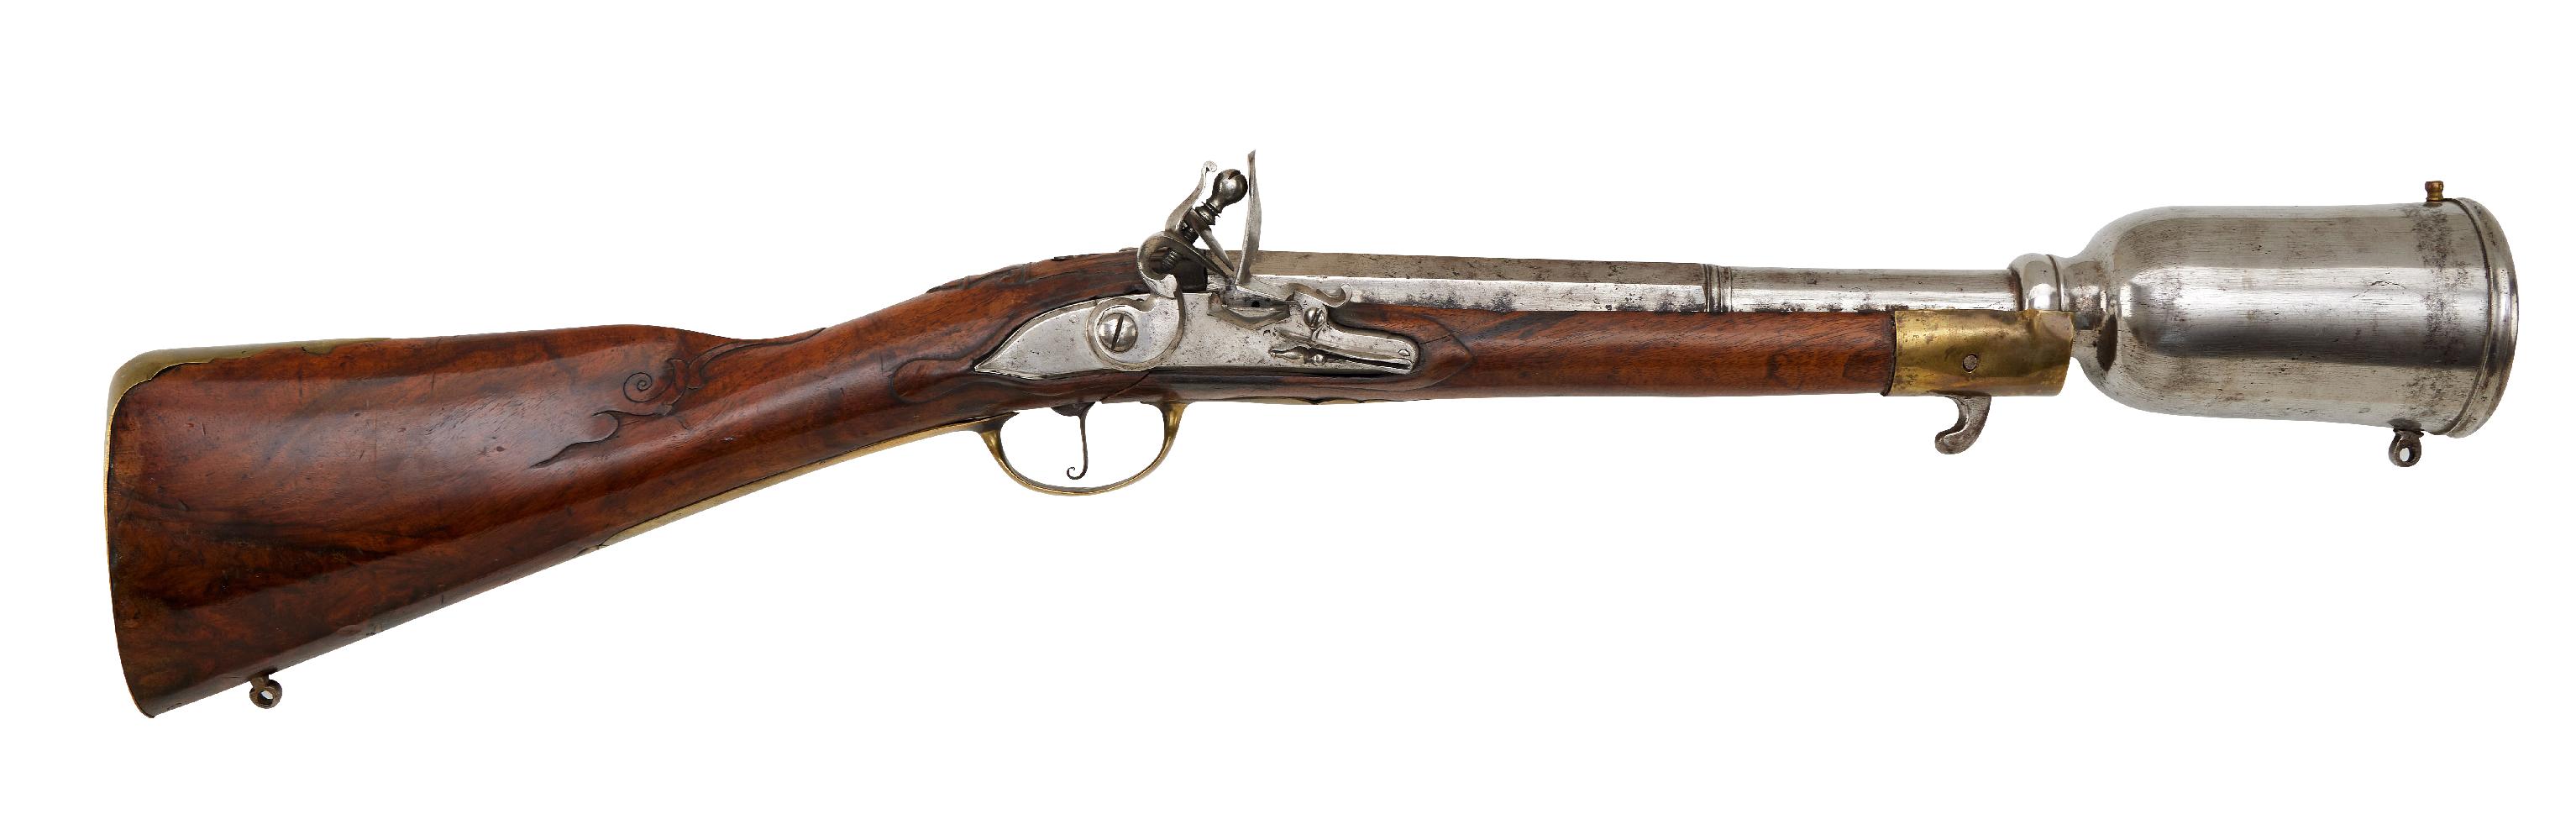 Guns / Rifles Erlaubnisfreie Waffen : Österreichisches Steinschloss - Granatgewehr M 1769 für die